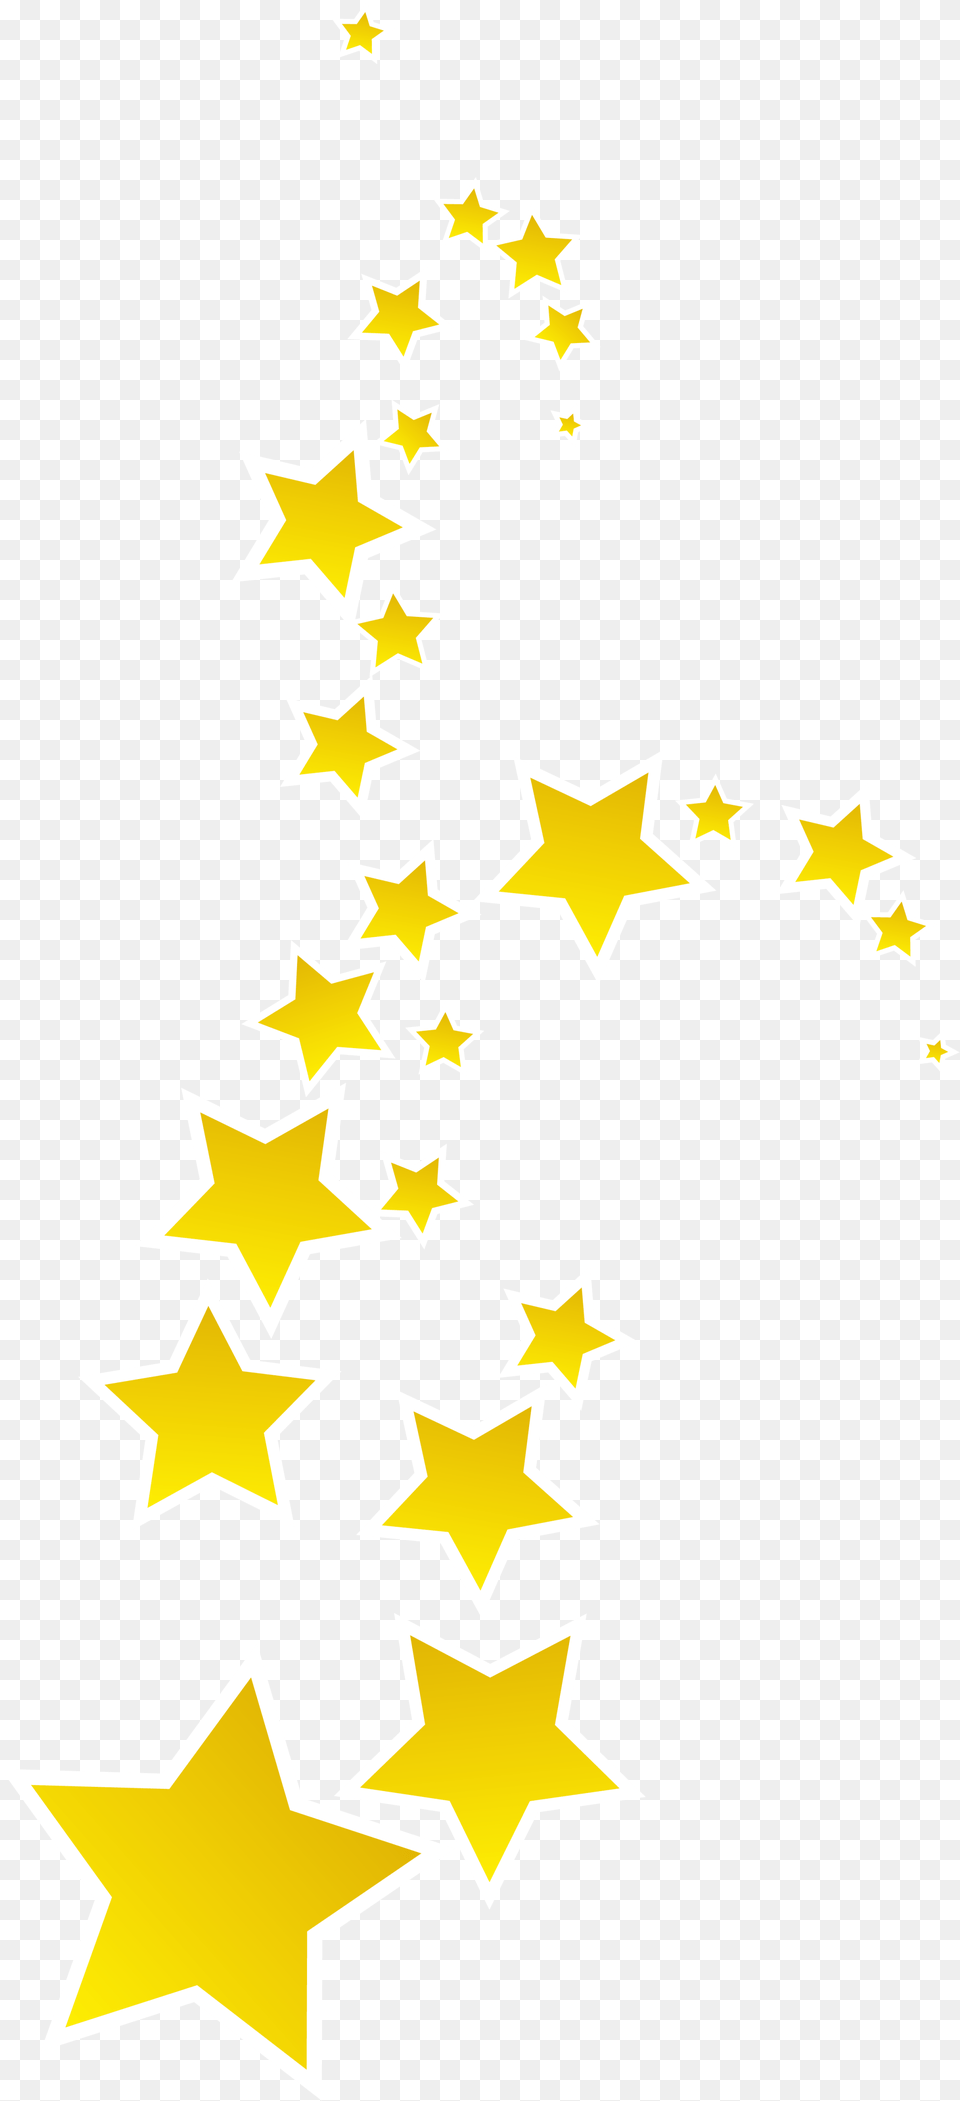 Stars Konfest Illustration, Star Symbol, Symbol Free Transparent Png